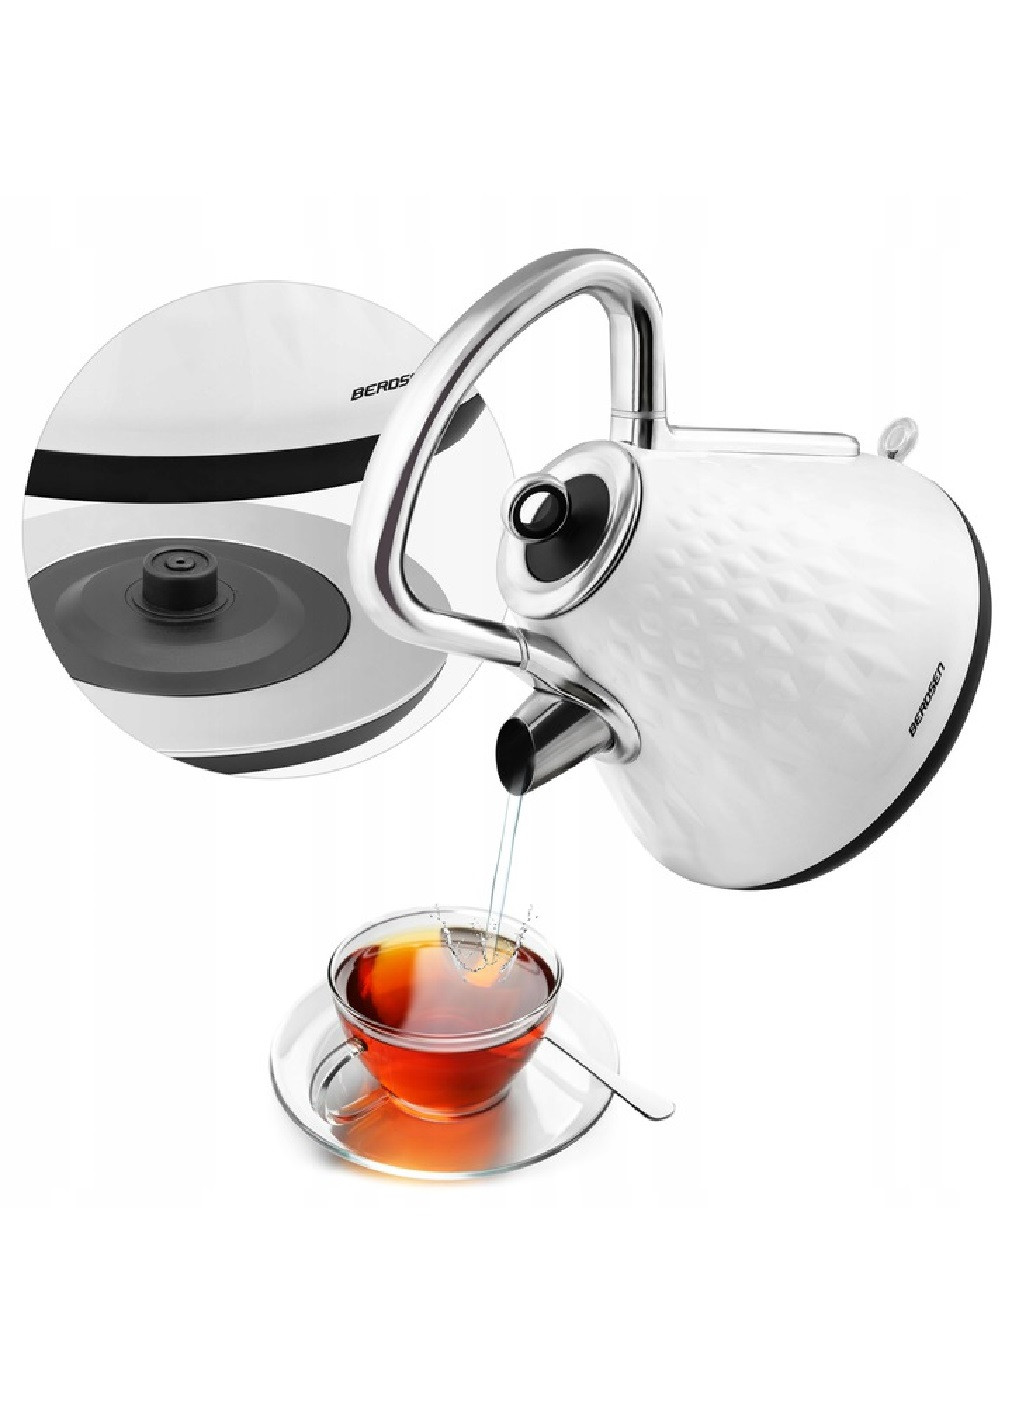 Электрочайник электрический чайник эргономичный металл с подсветкой фильтром 1,7 л 2200 Вт 29х23 см (475762-Prob) Белый Unbranded (271039198)